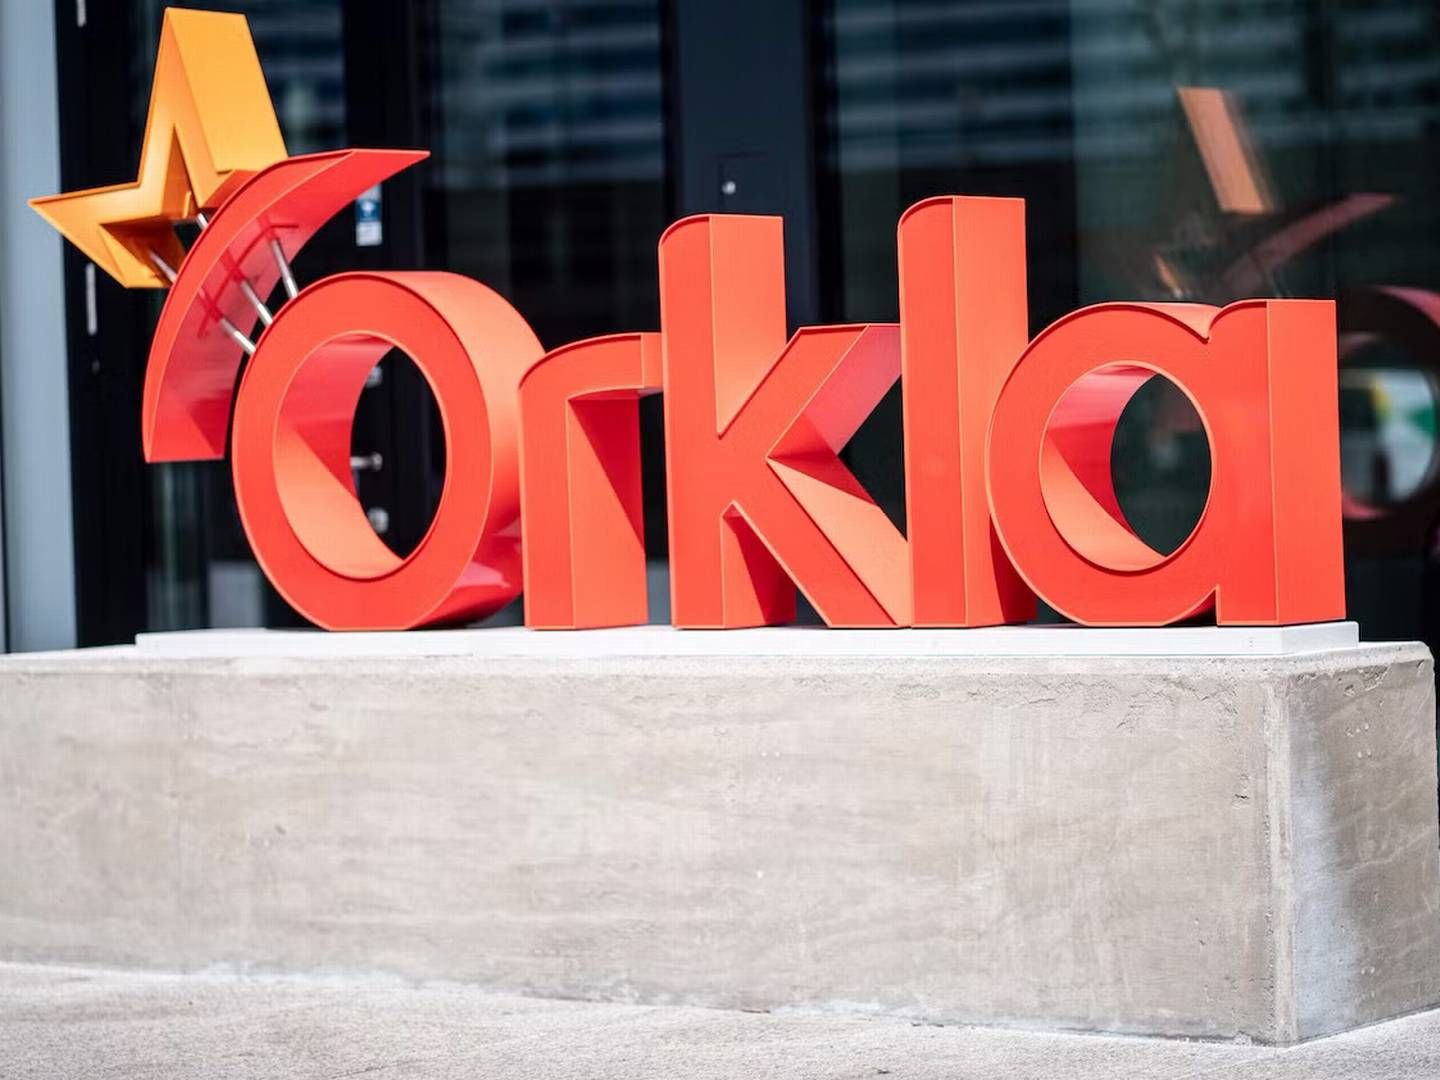 Orkla-mærkerne bliver - oven på nogle discount- og private label-år - igen hevet ned fra hylderne, fortæller Orkla Danmark-topchef, Carsten Hänel, der beretter om mere stabiliserede volumener. | Foto: PR/Orkla